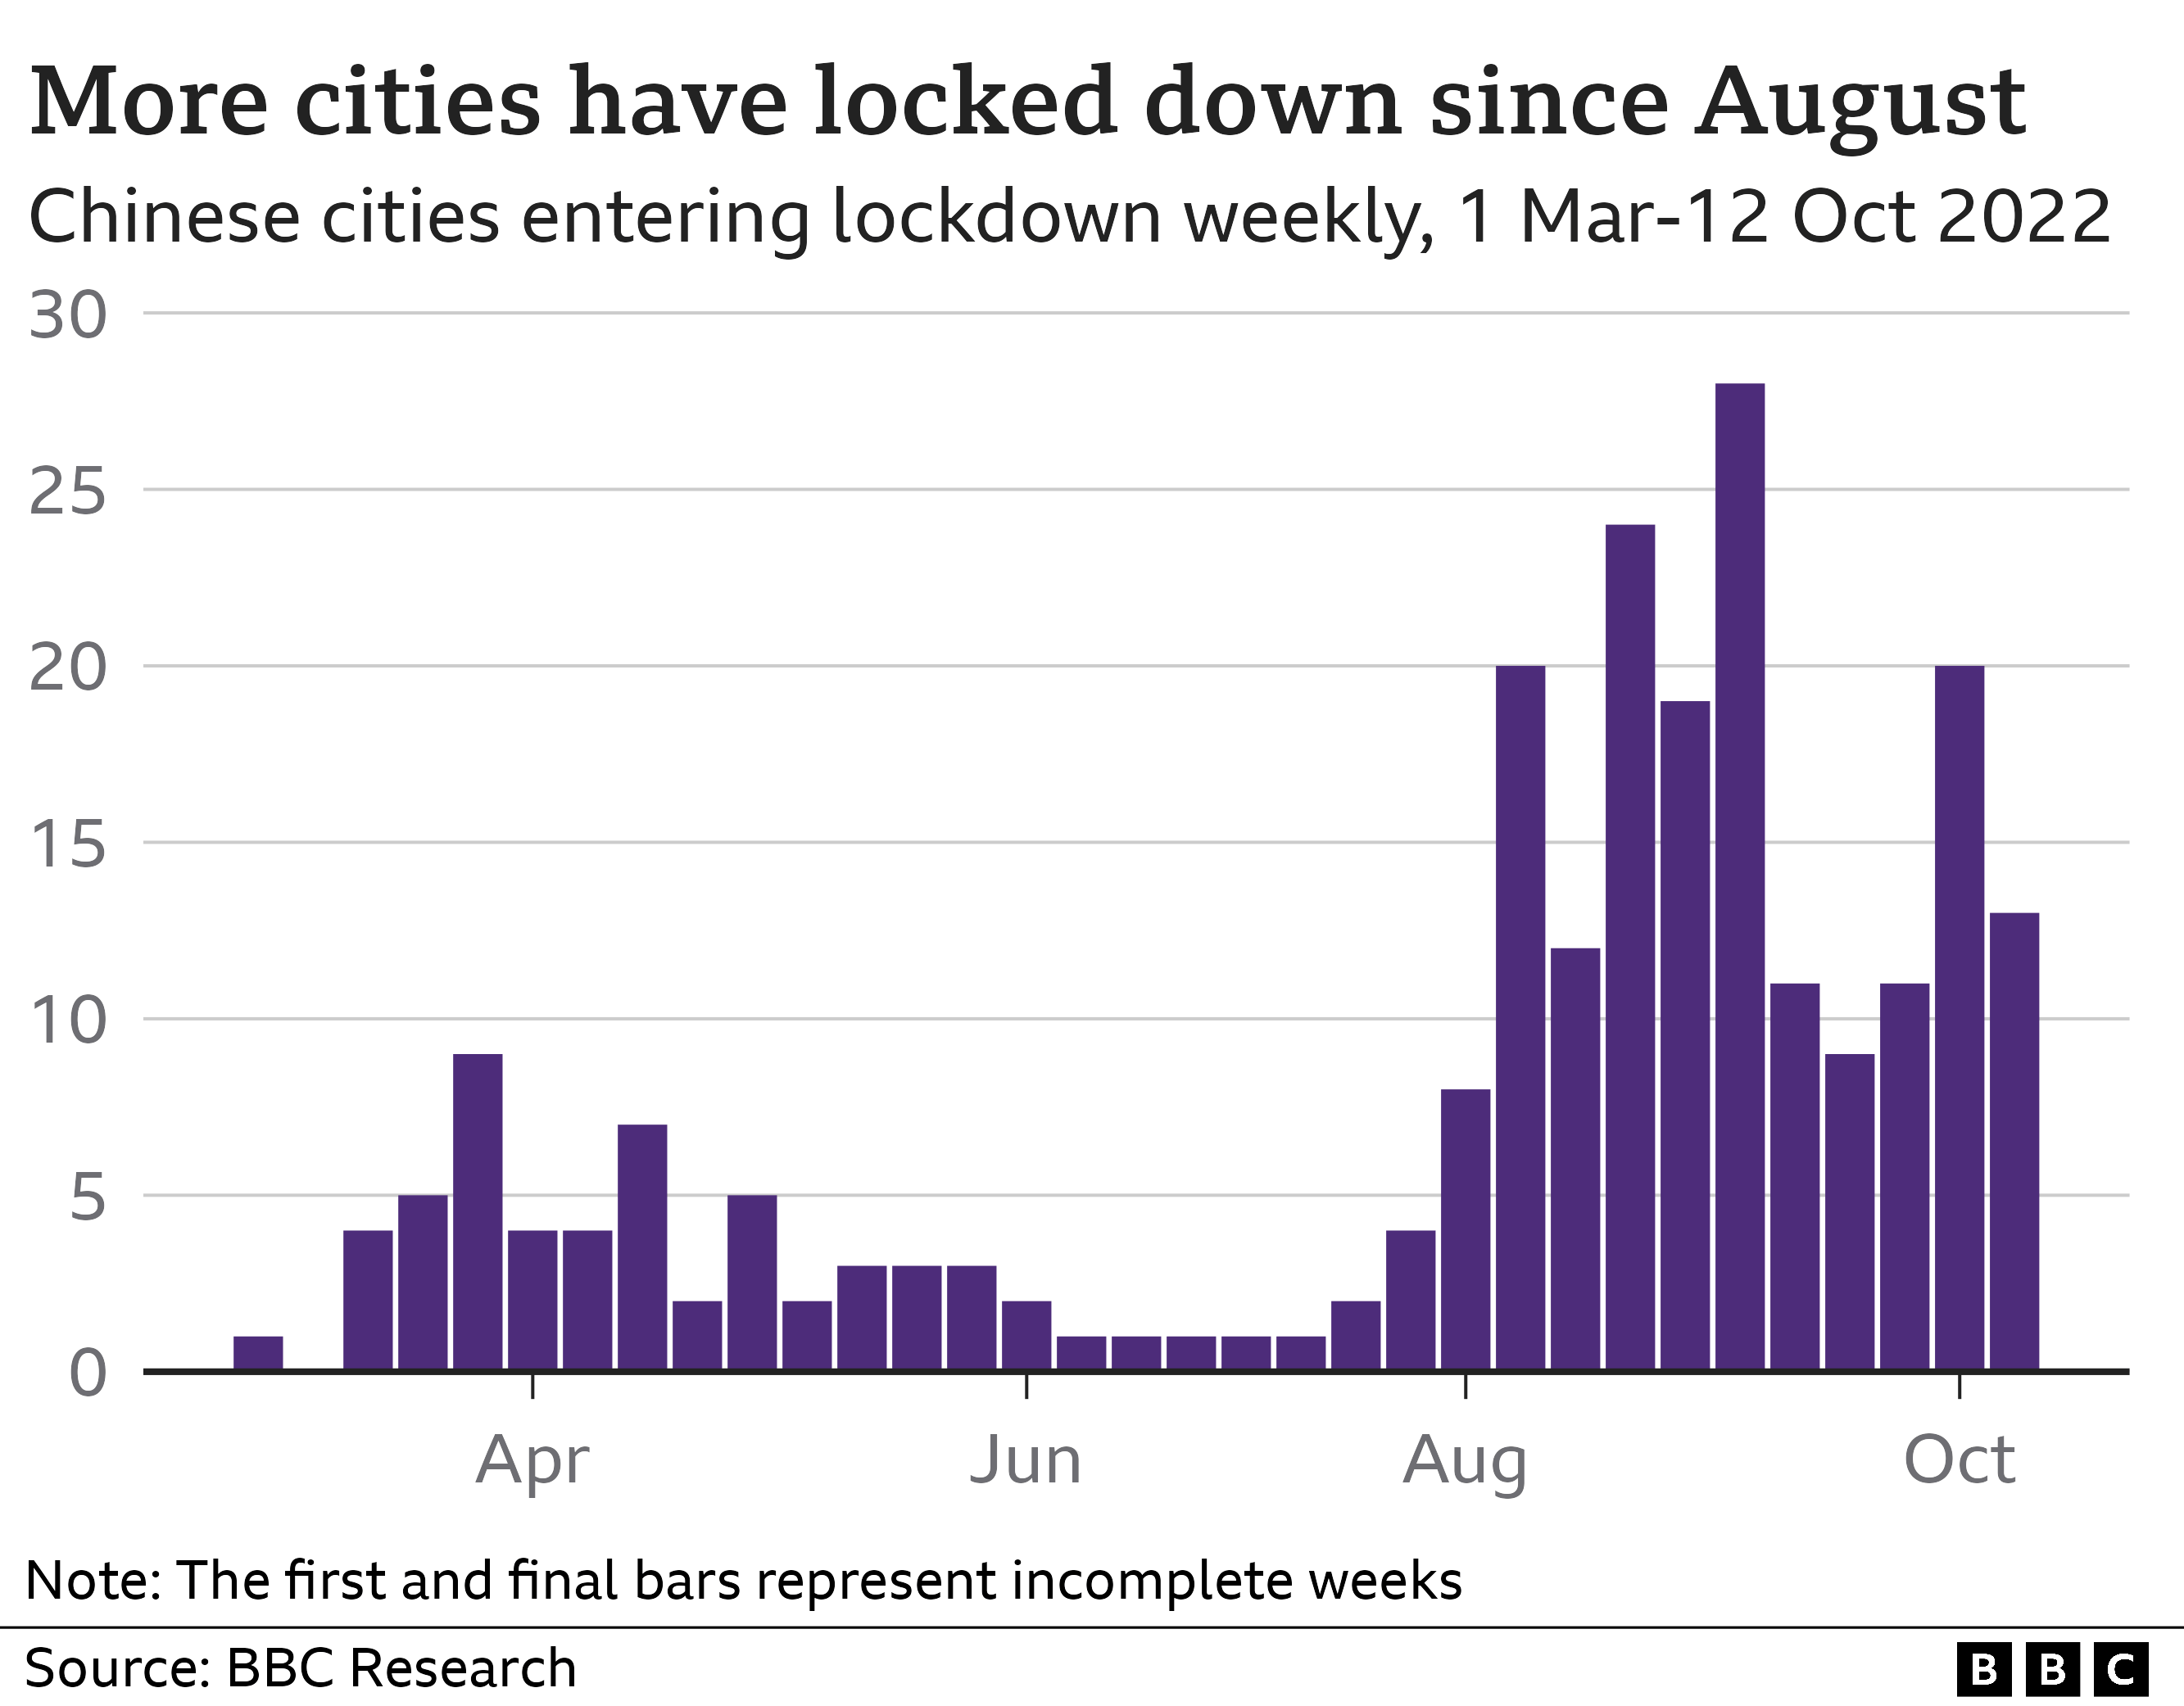 Диаграмма, показывающая количество городов в материковом Китае, которые вводили блокировку каждую неделю в период с 1 марта по 12 октября 2022 года. С августа количество блокировок в городах заметно увеличилось.